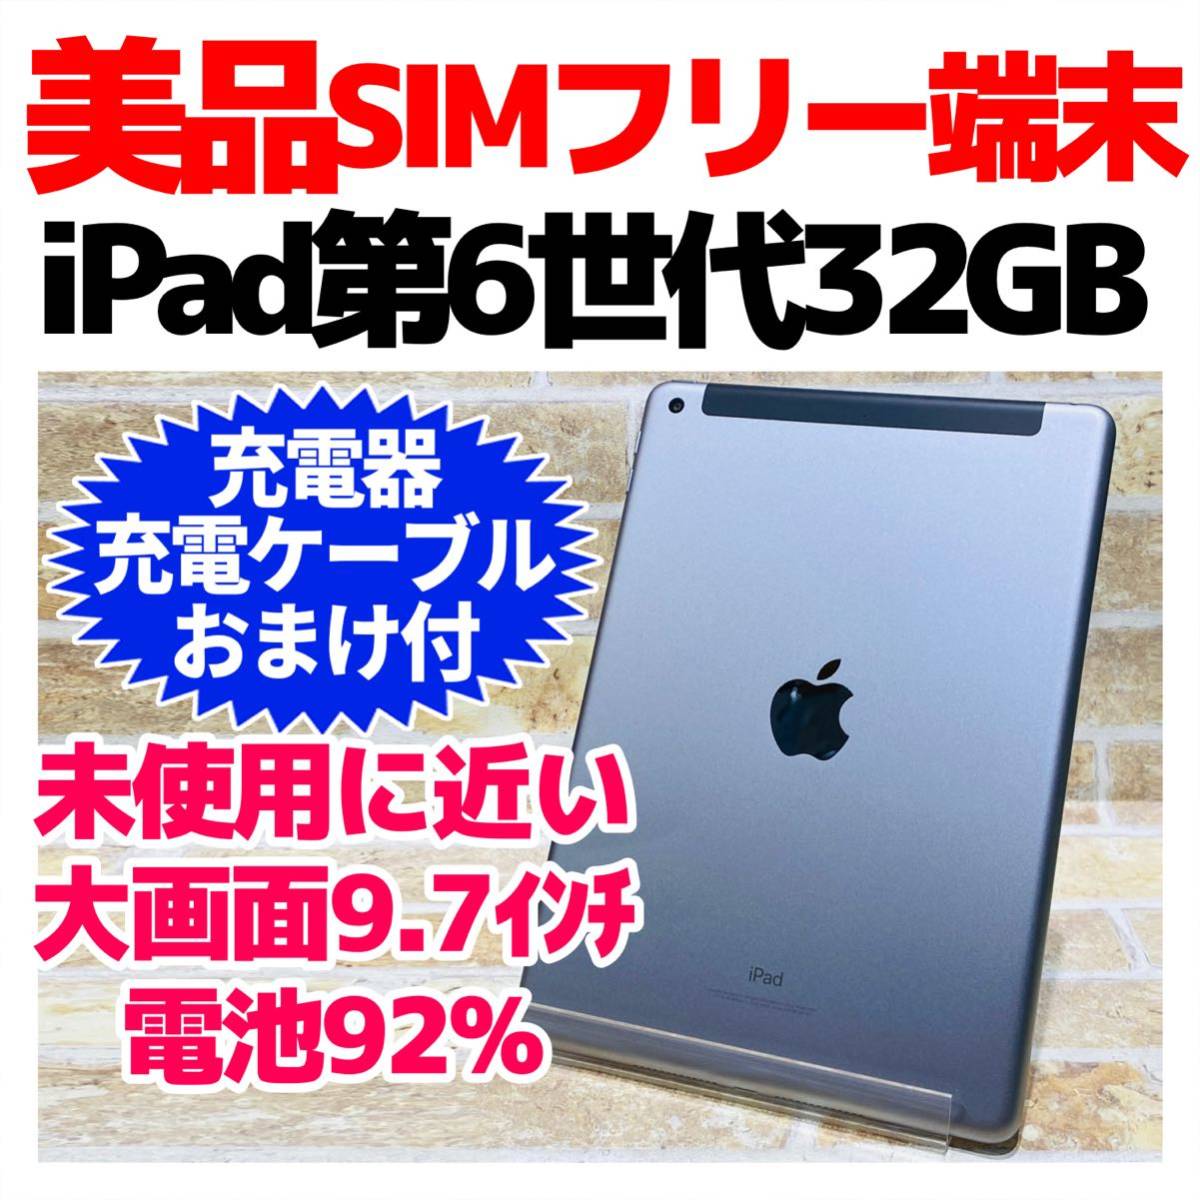 スタイリッシュシンプル iPad Pro 12.9 Cellular 256GB SIMフリー おまけ付